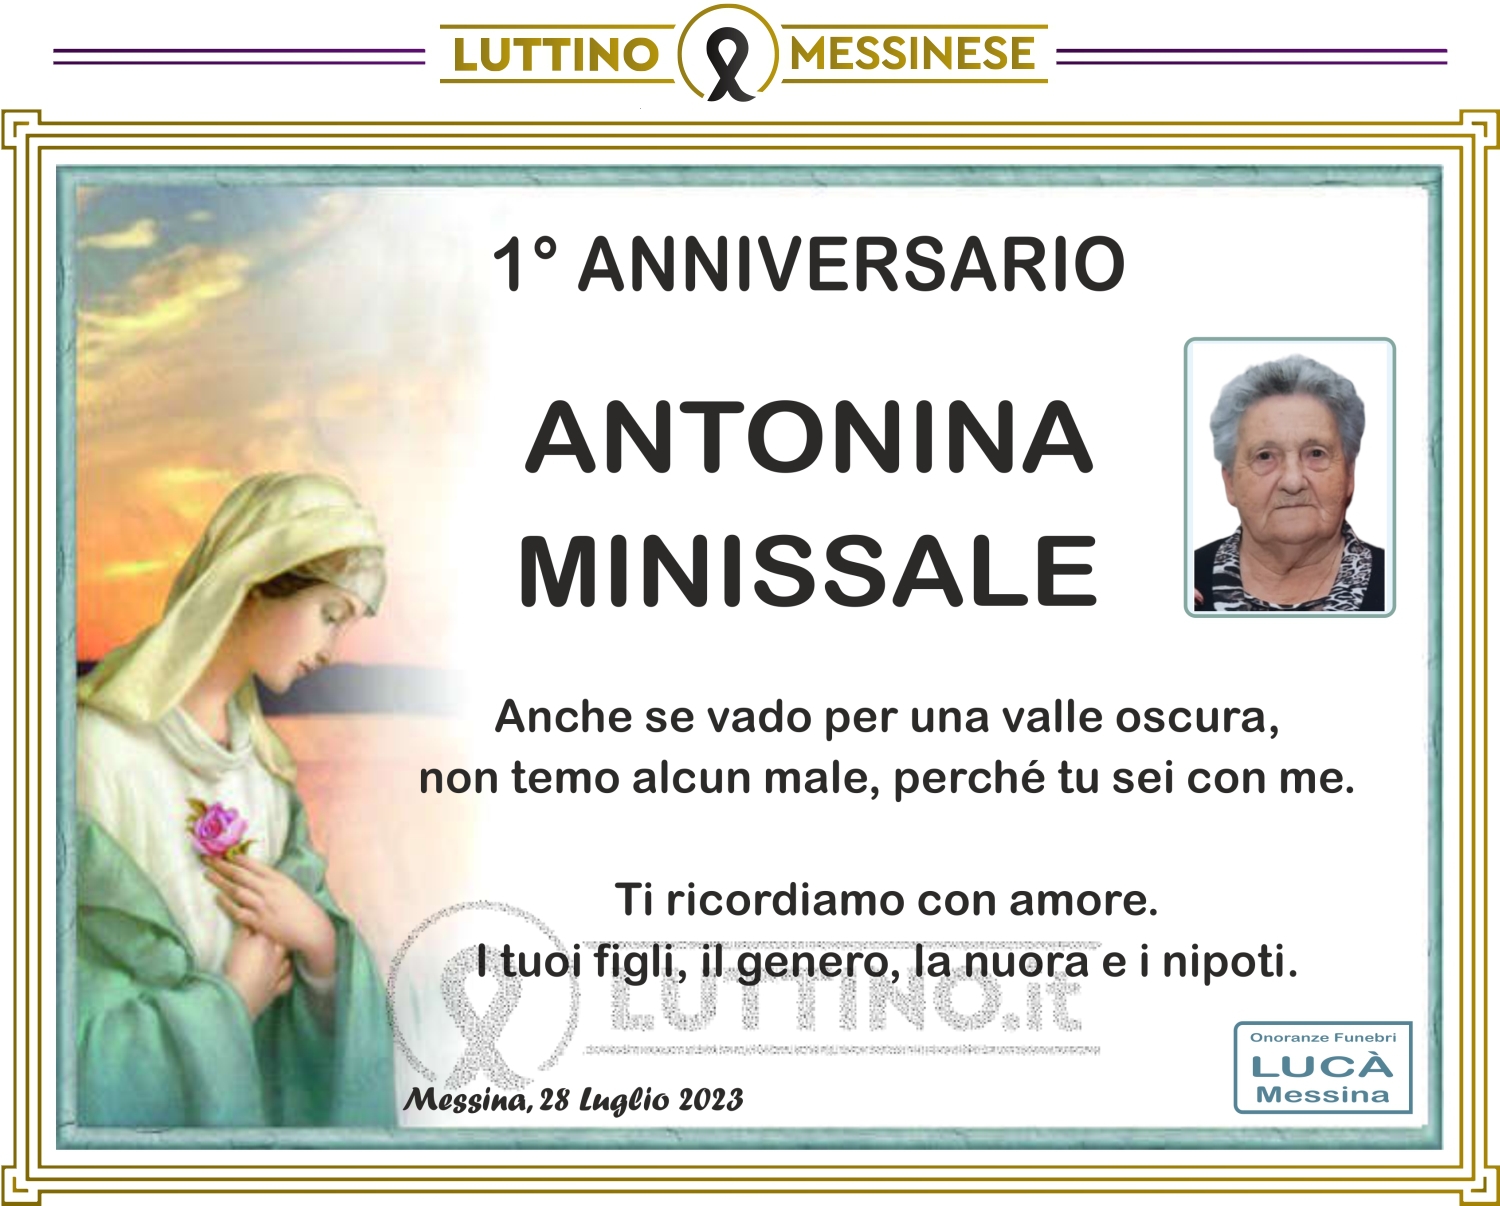 Antonina Minissale